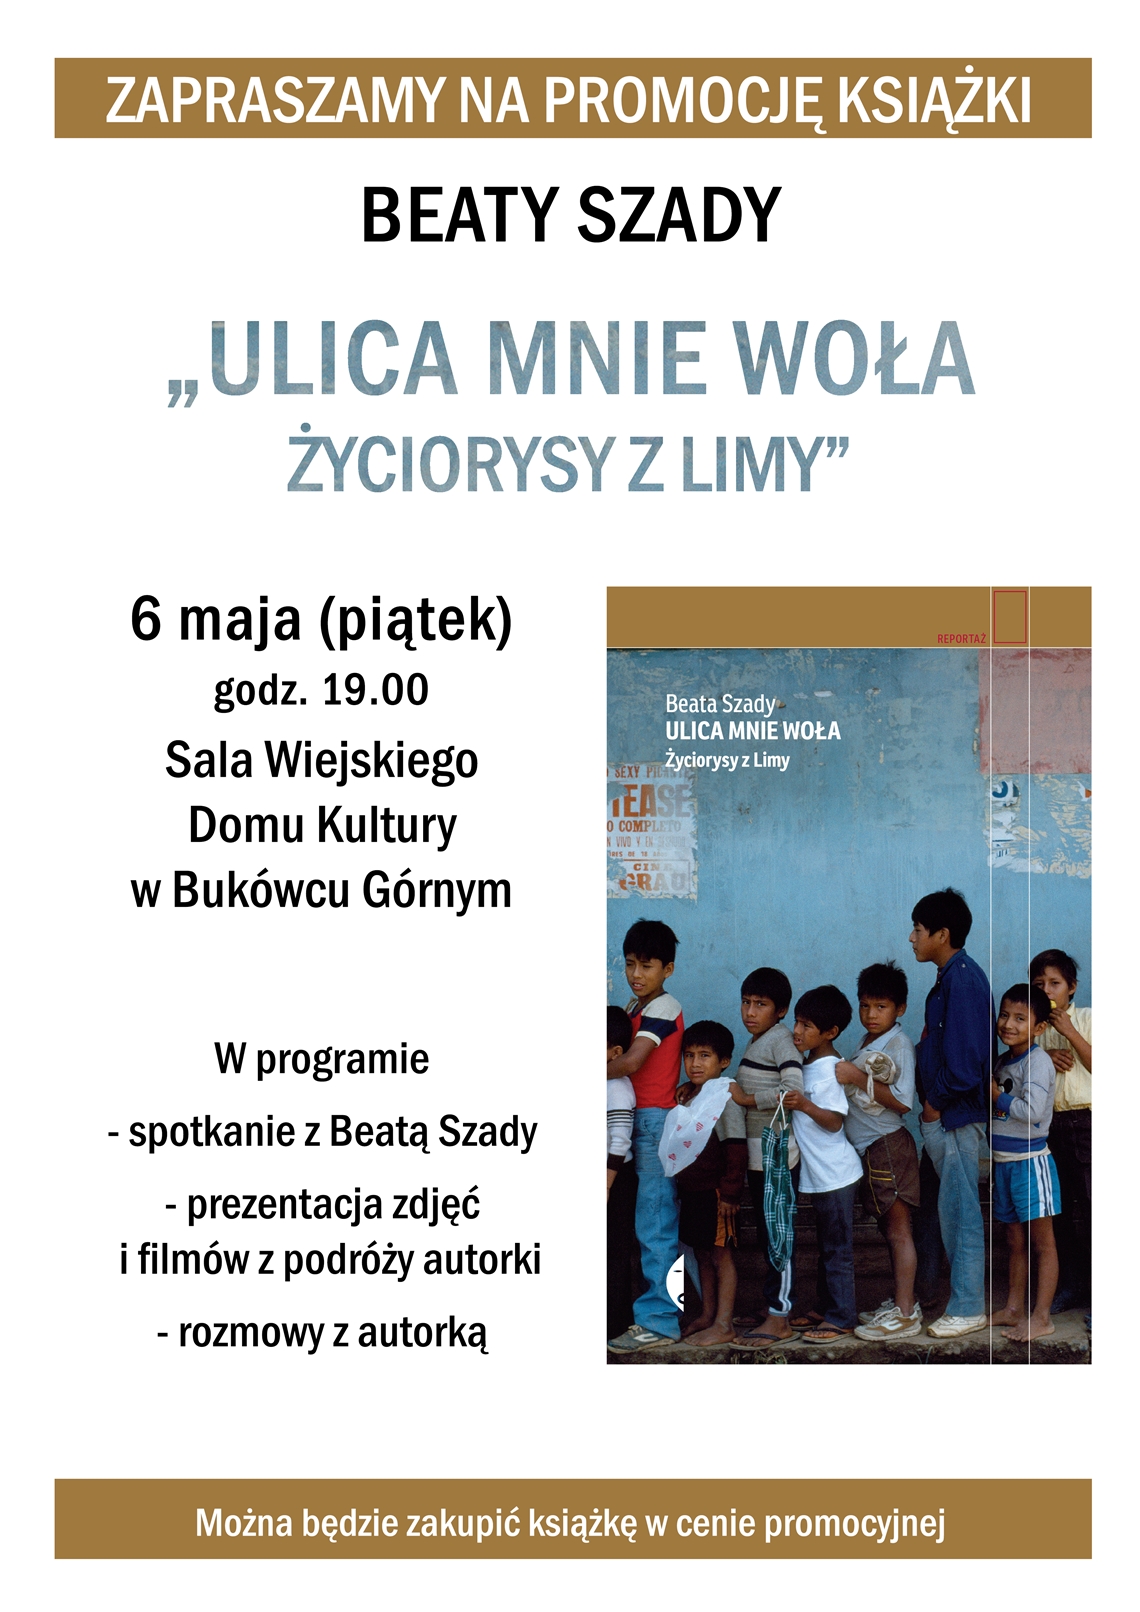 Promocja książki Beaty Szady „Ulica mnie woła, życiorysy z Limy”